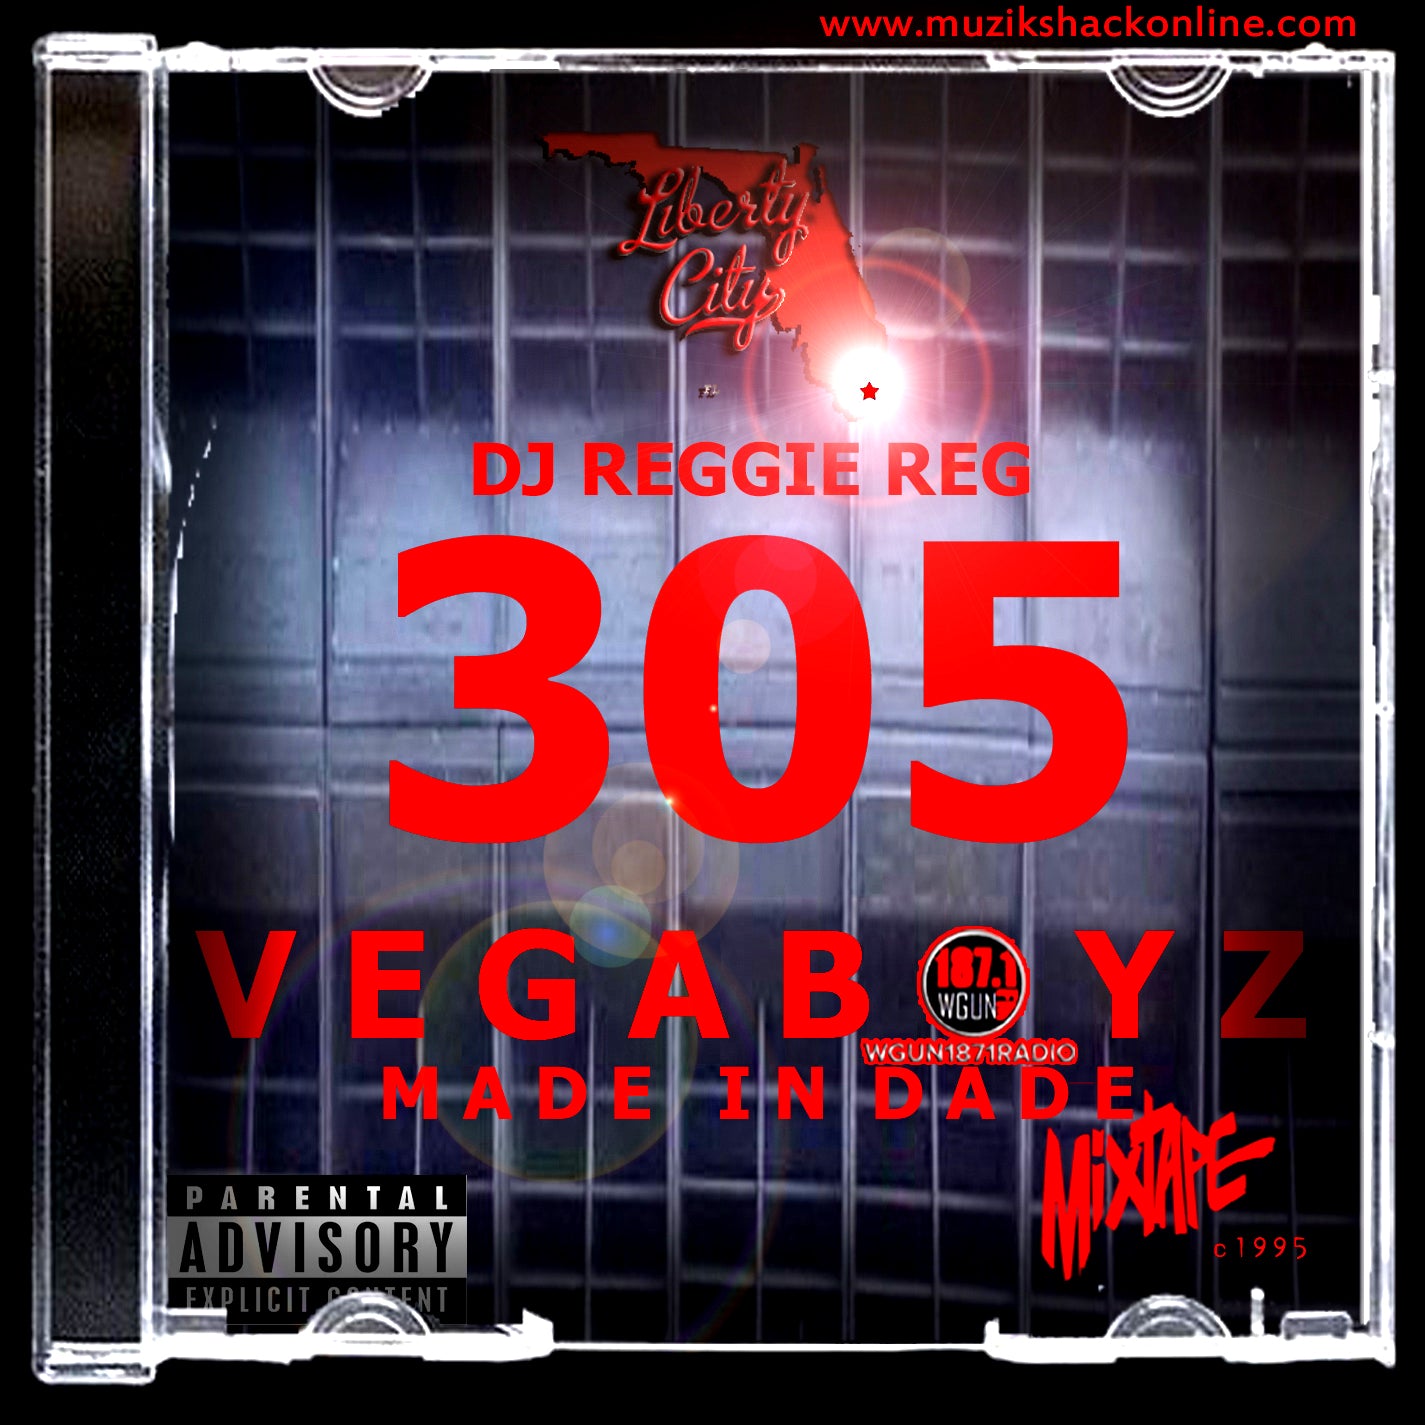 DJ REGGIE REGG 305 - VEGABOYZ CLASSIC (RARE COPY) c1995